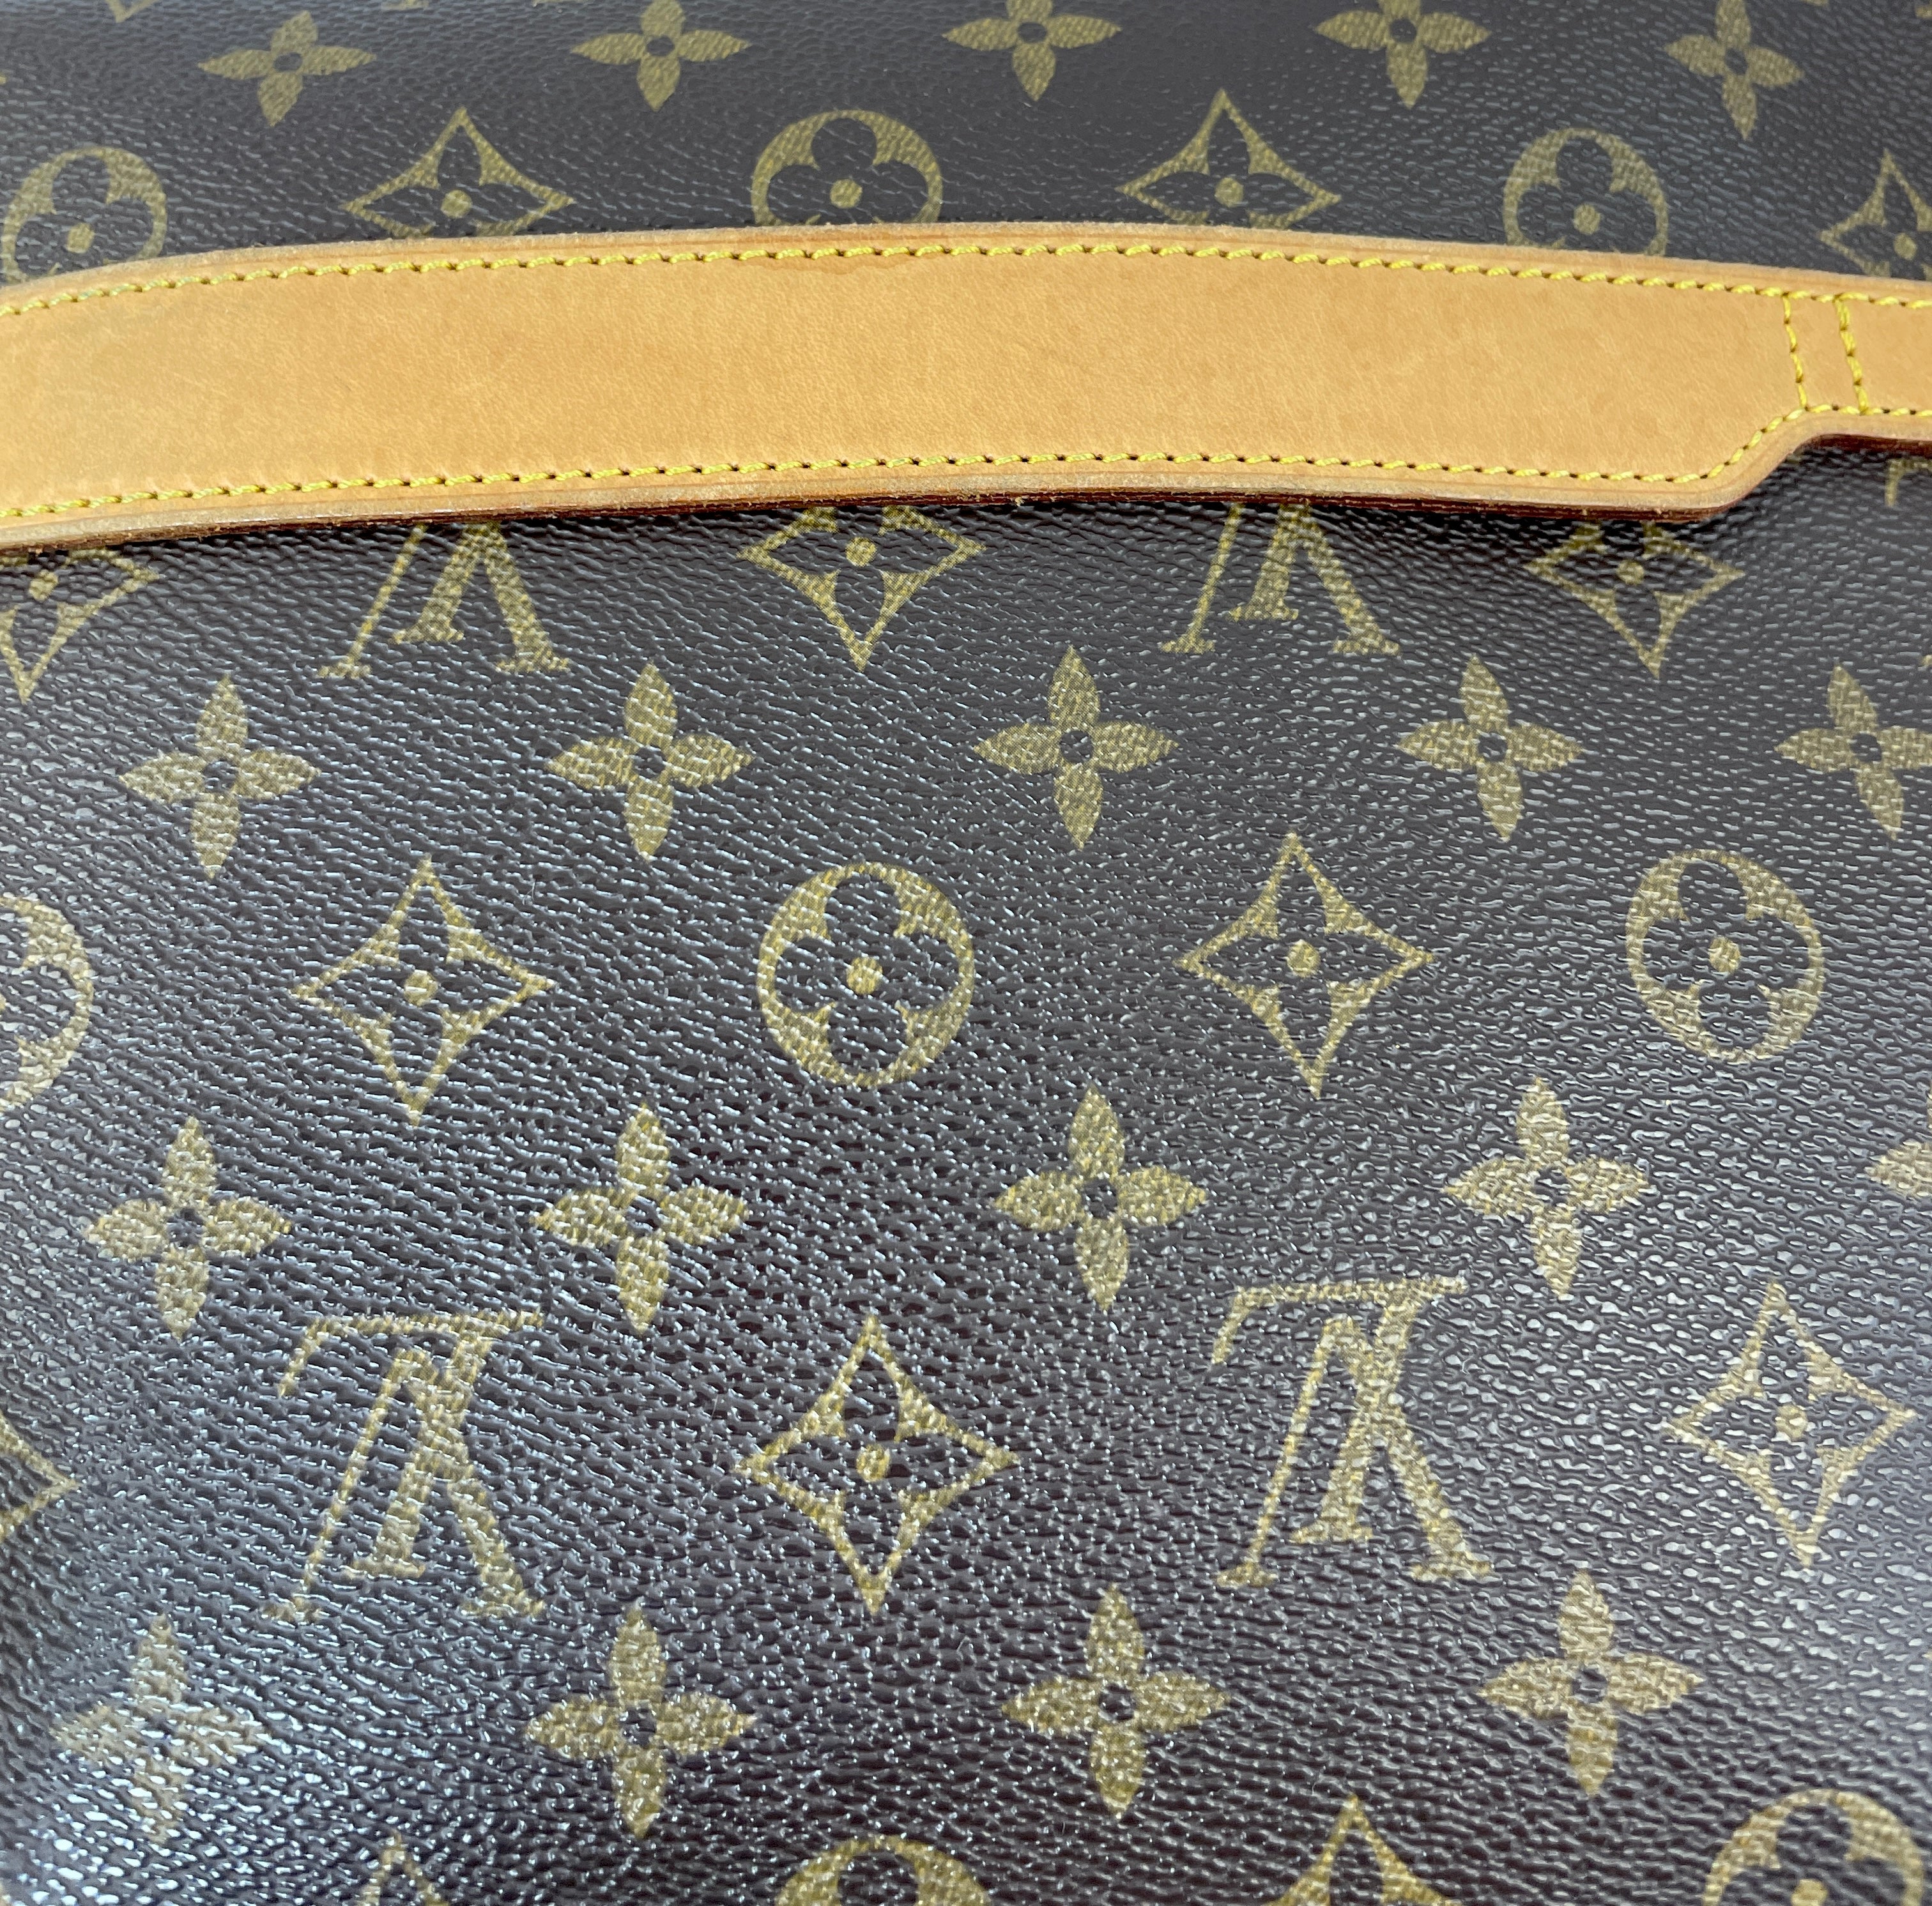 Pre-Loved Authentic Louis Vuitton Monogram Laptop Bag